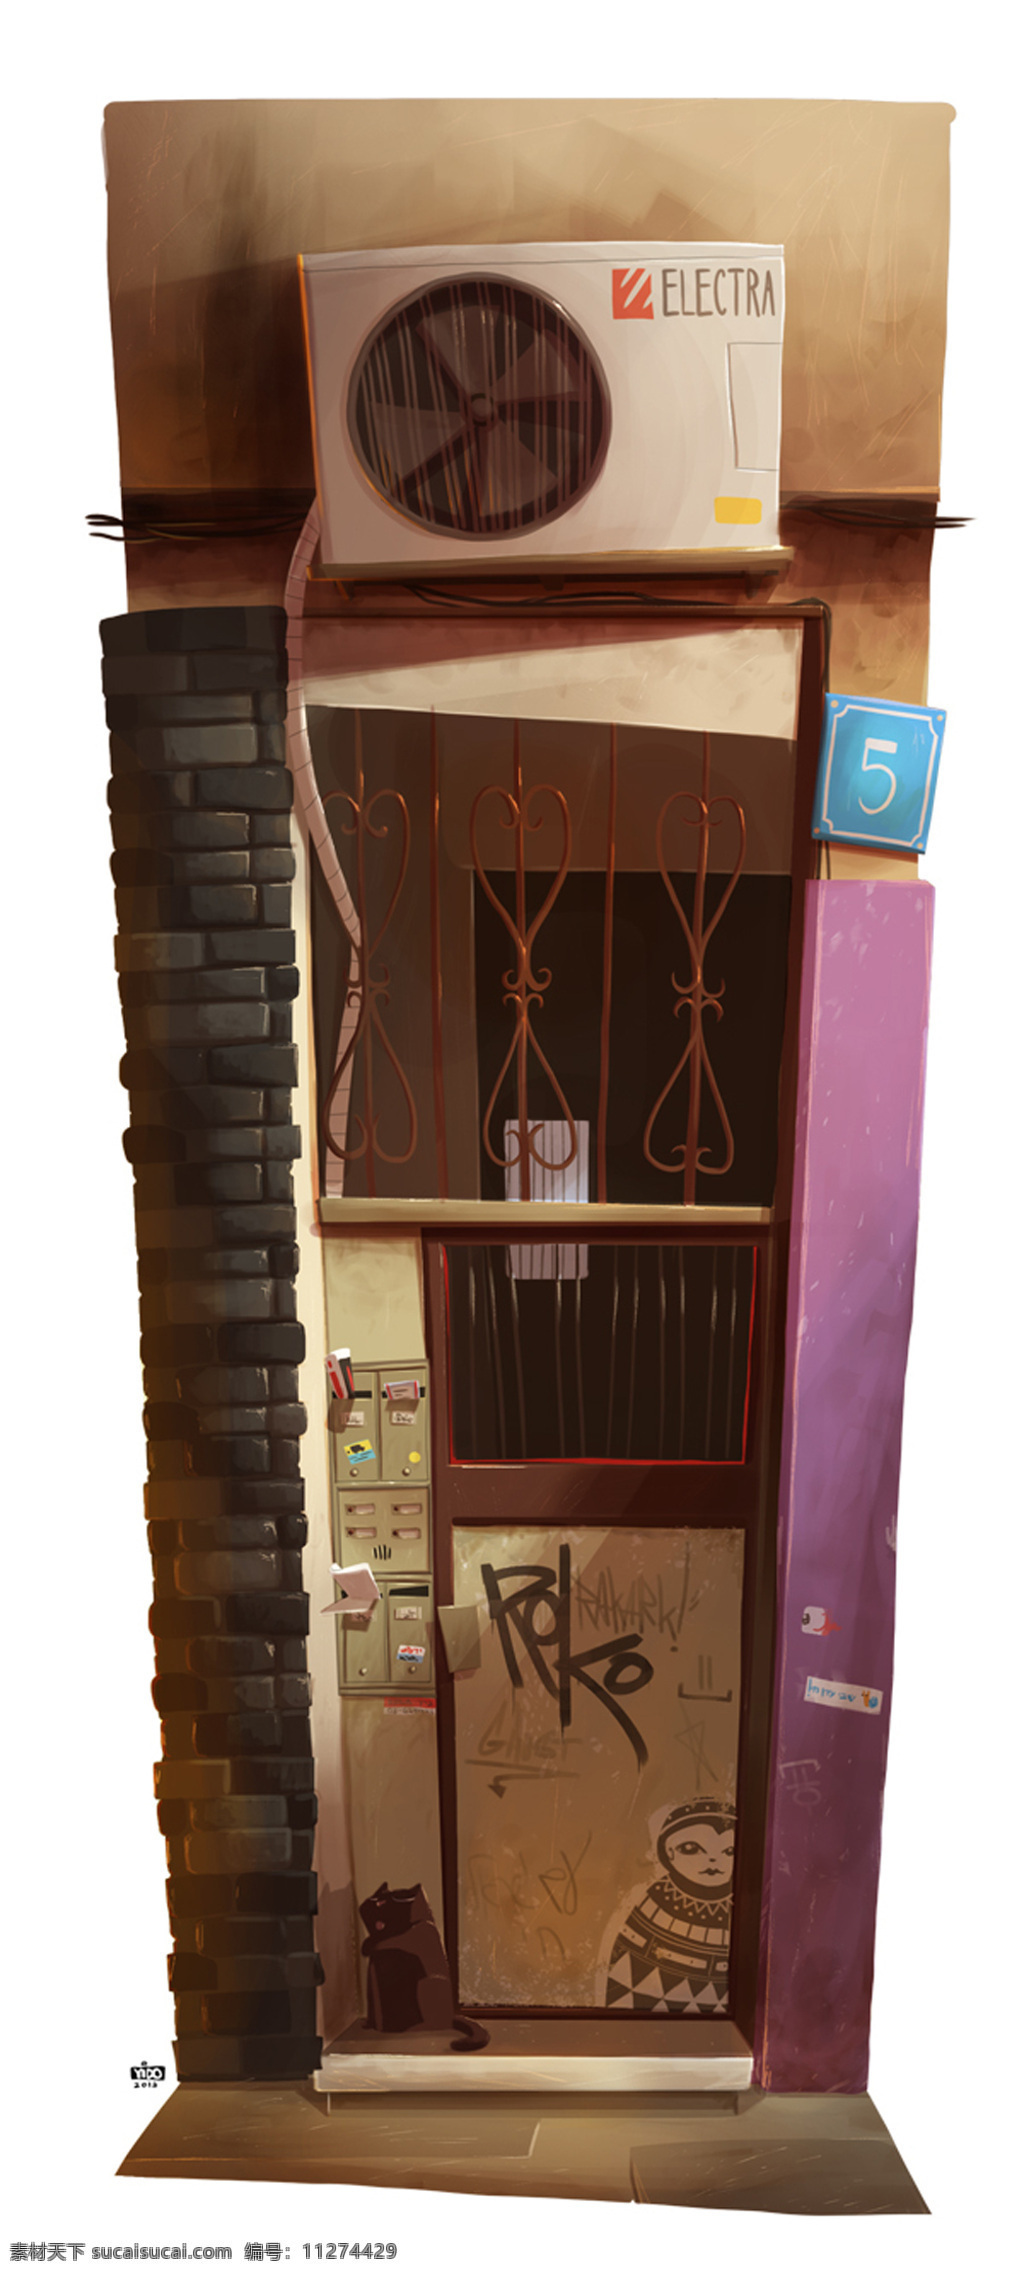 胡同 巷子 筒子楼 复古 小时候 儿时 街头 涂鸦 门头 空调 动漫动画 风景漫画 白色